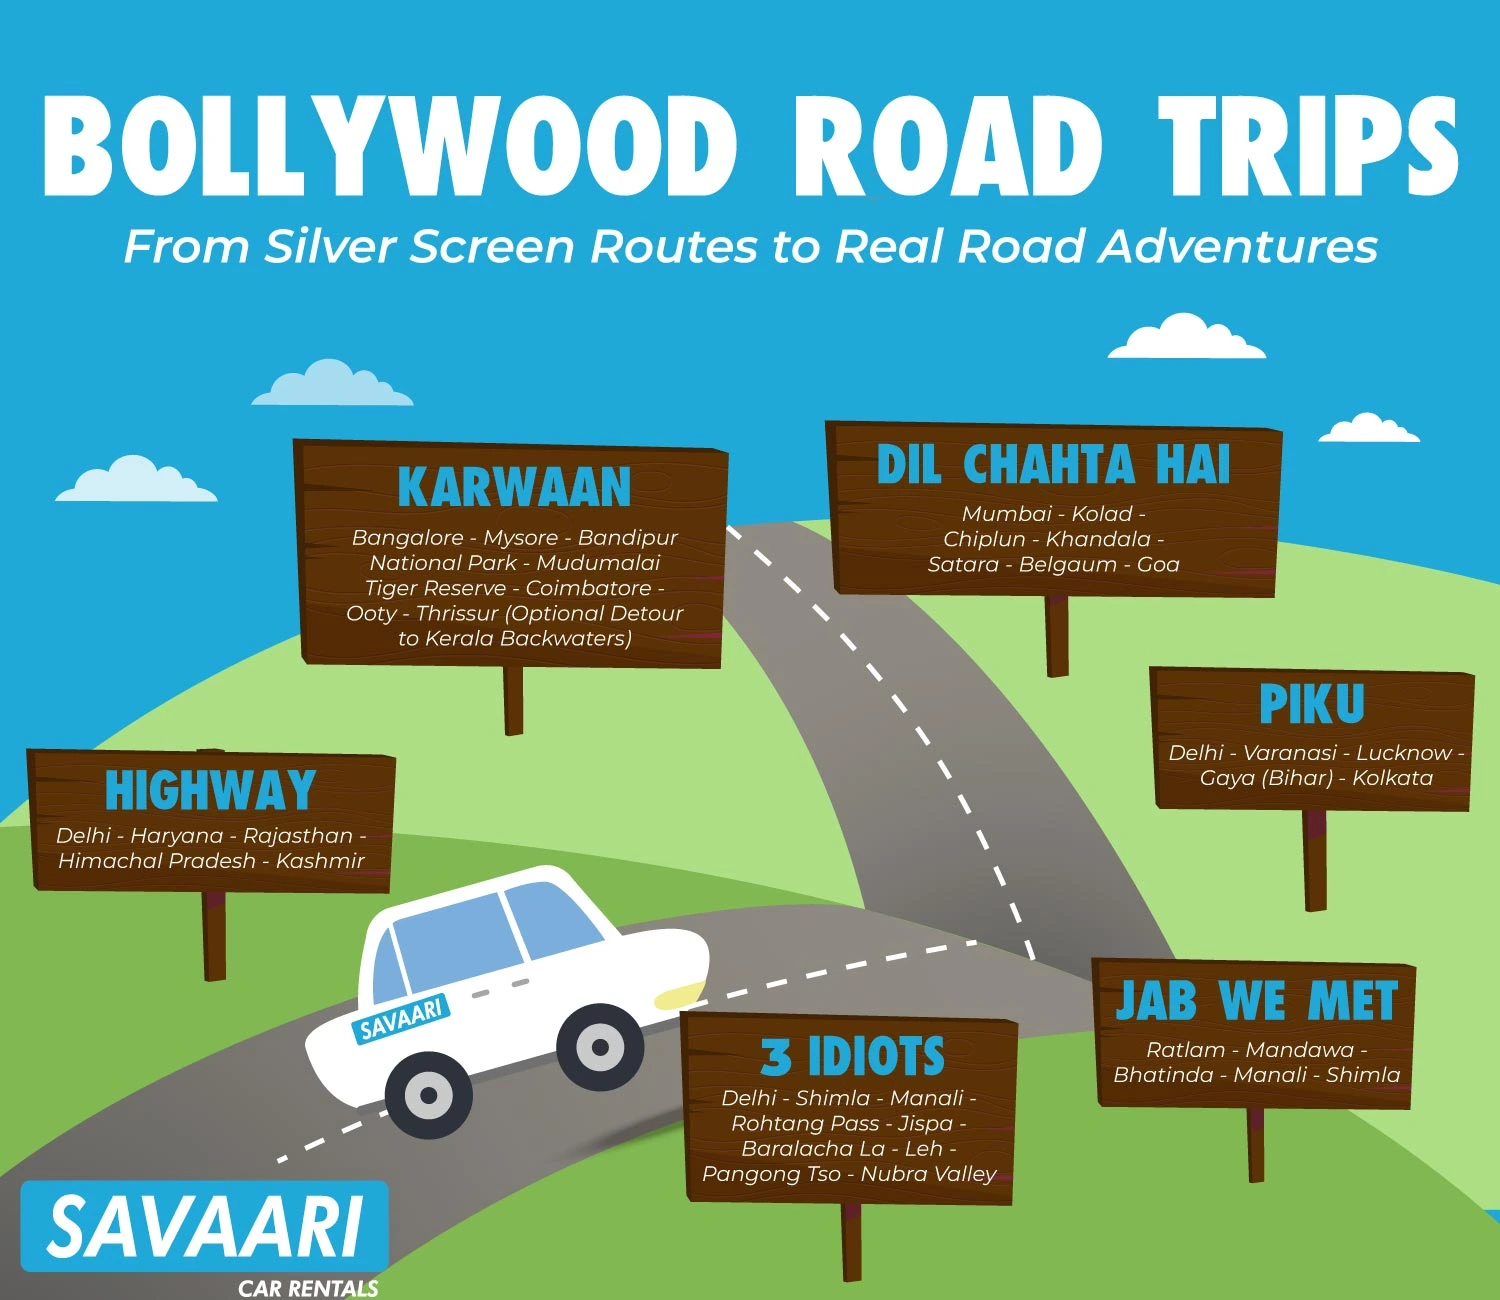 Bollywood road trip